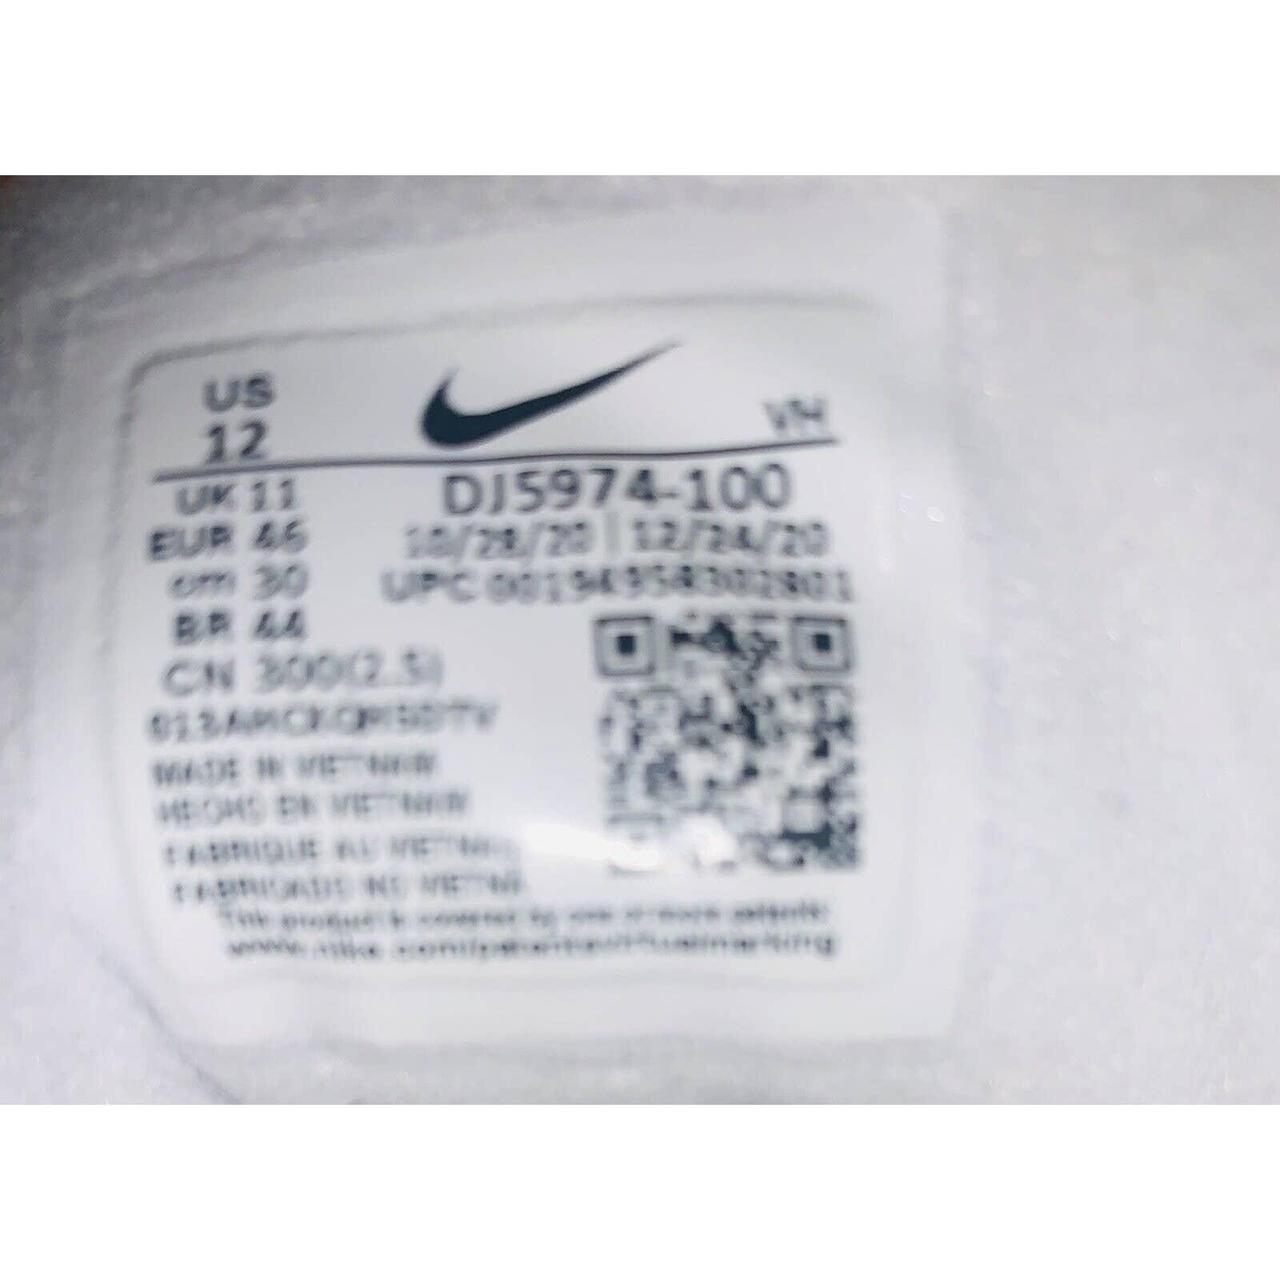 Nike Air Raid White Gum Size 8.5 a little dirty but - Depop